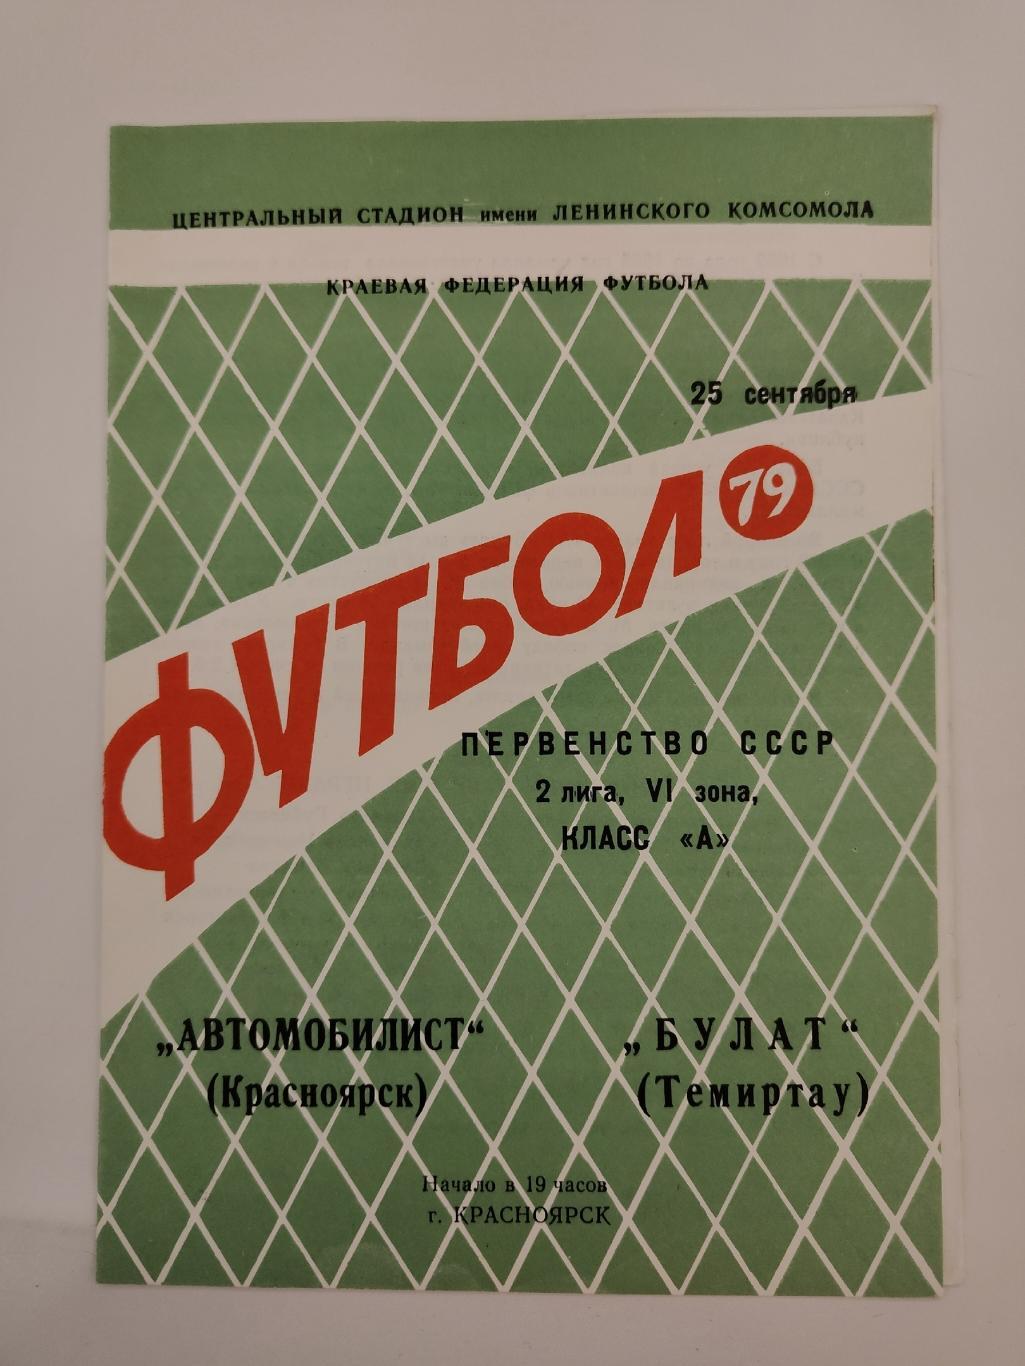 Автомобилист Красноярск - Булат Темиртау 1979